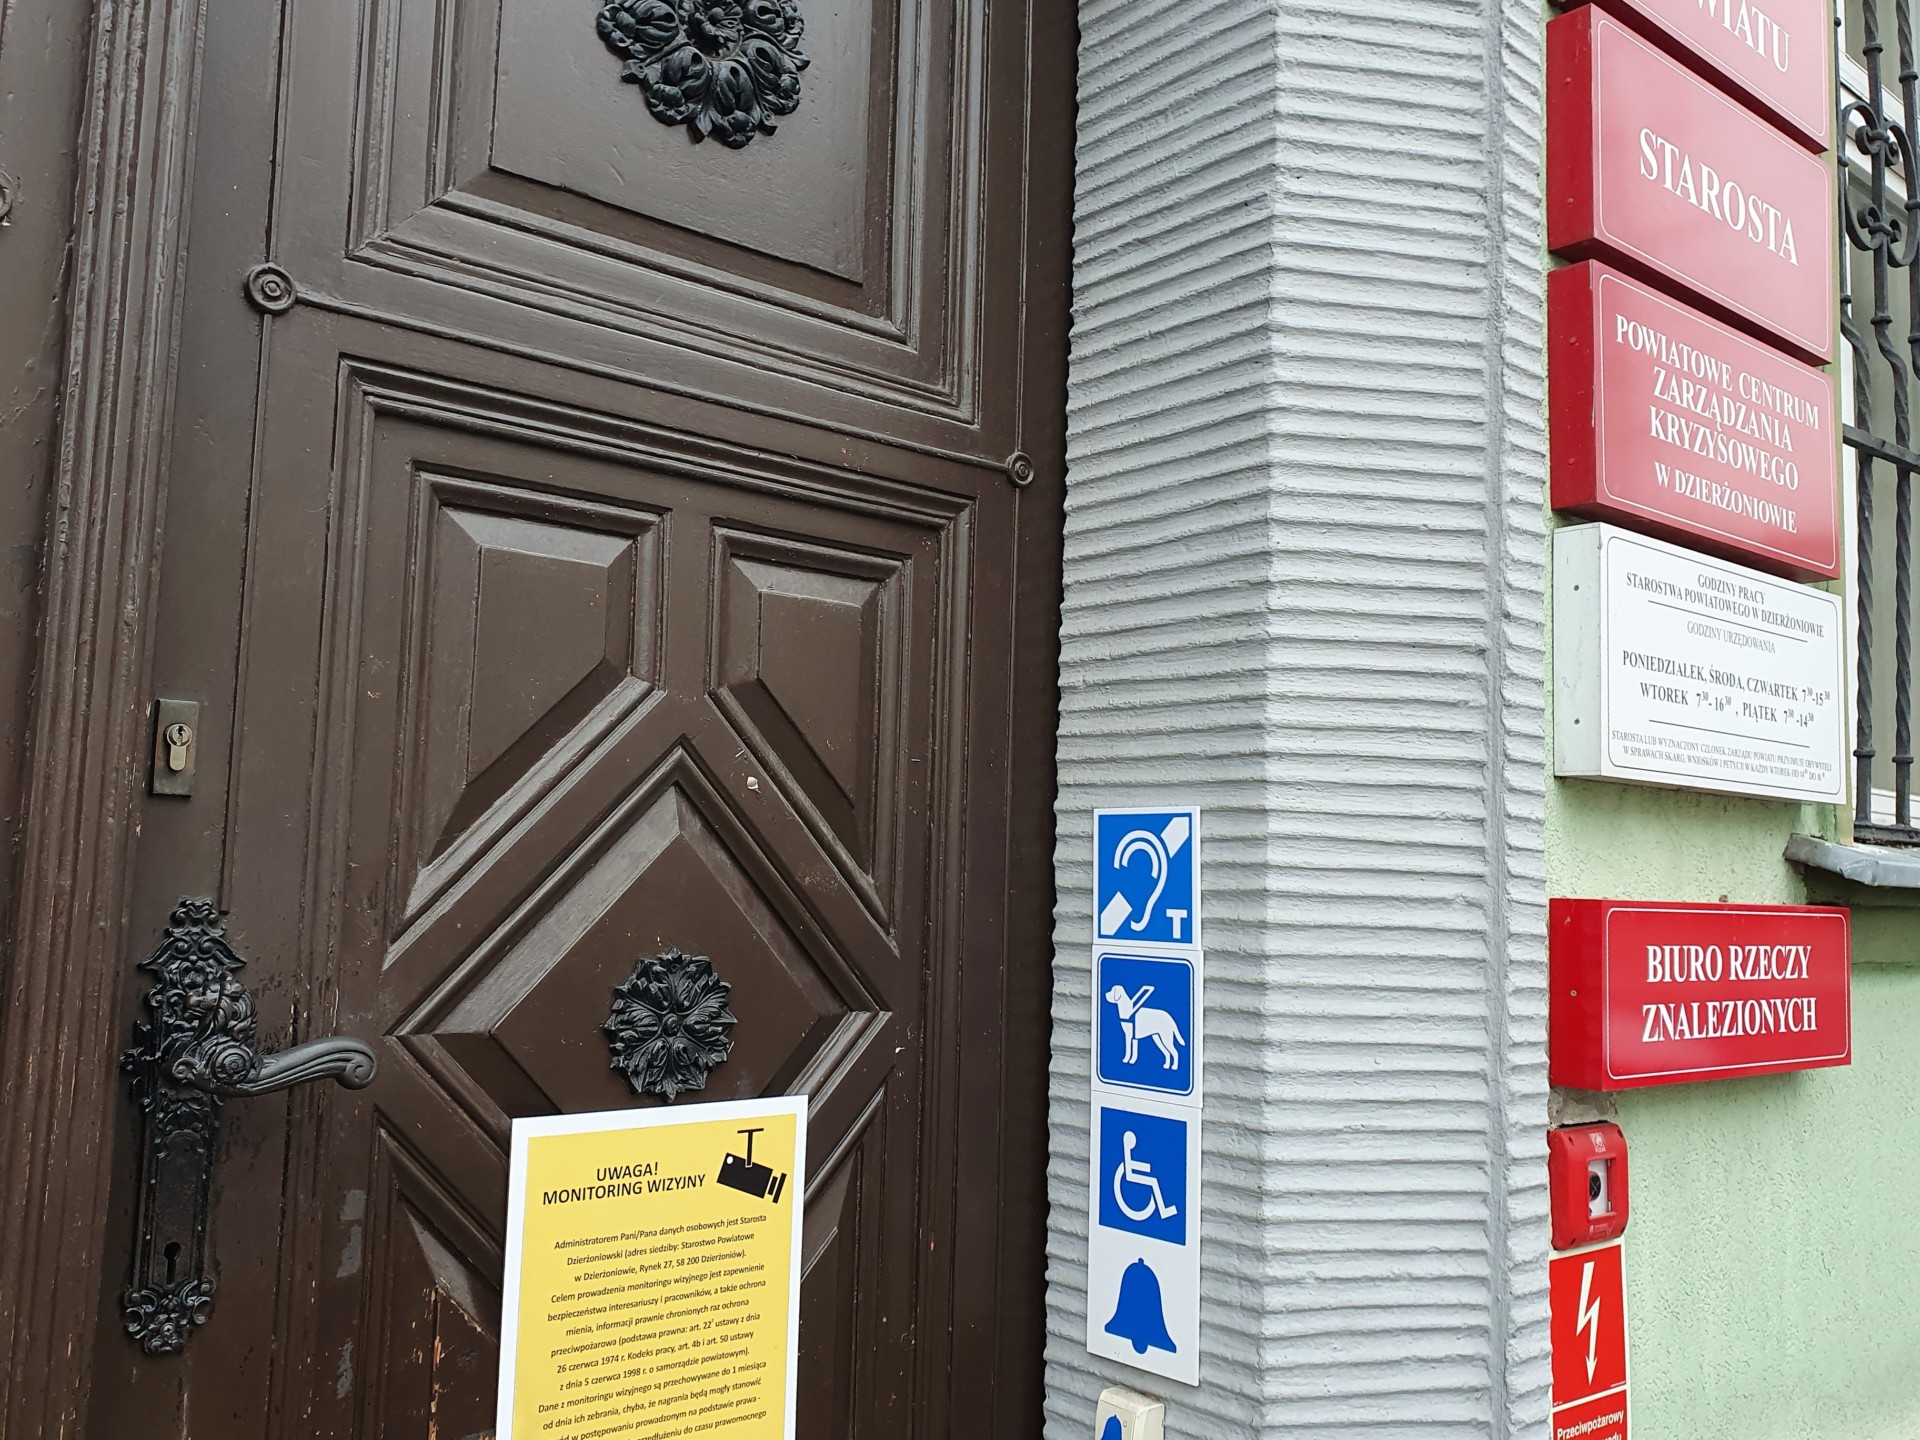 Wejście do budynku Starostwa po prawej stronie znak pętli indukcyjnej - na niebieskim tle ucho i duża litera T. 